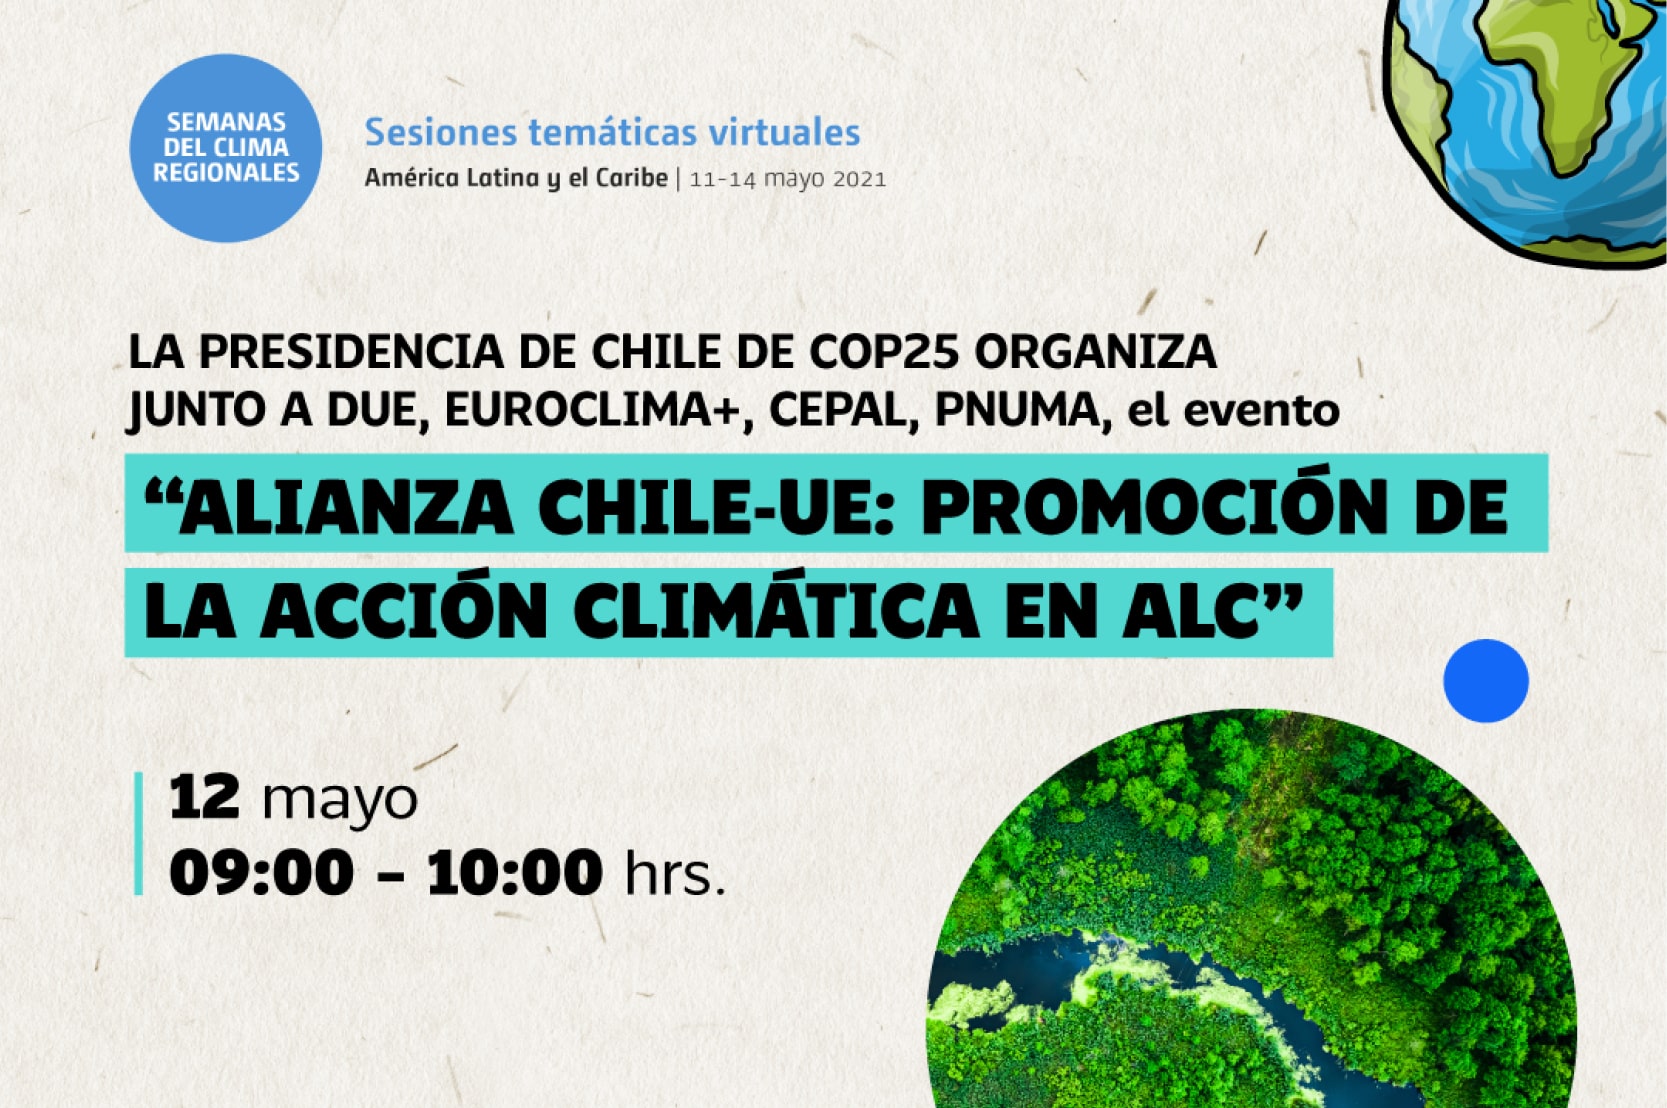 Alianza Chile-UE: promoción de la acción climática en ALC